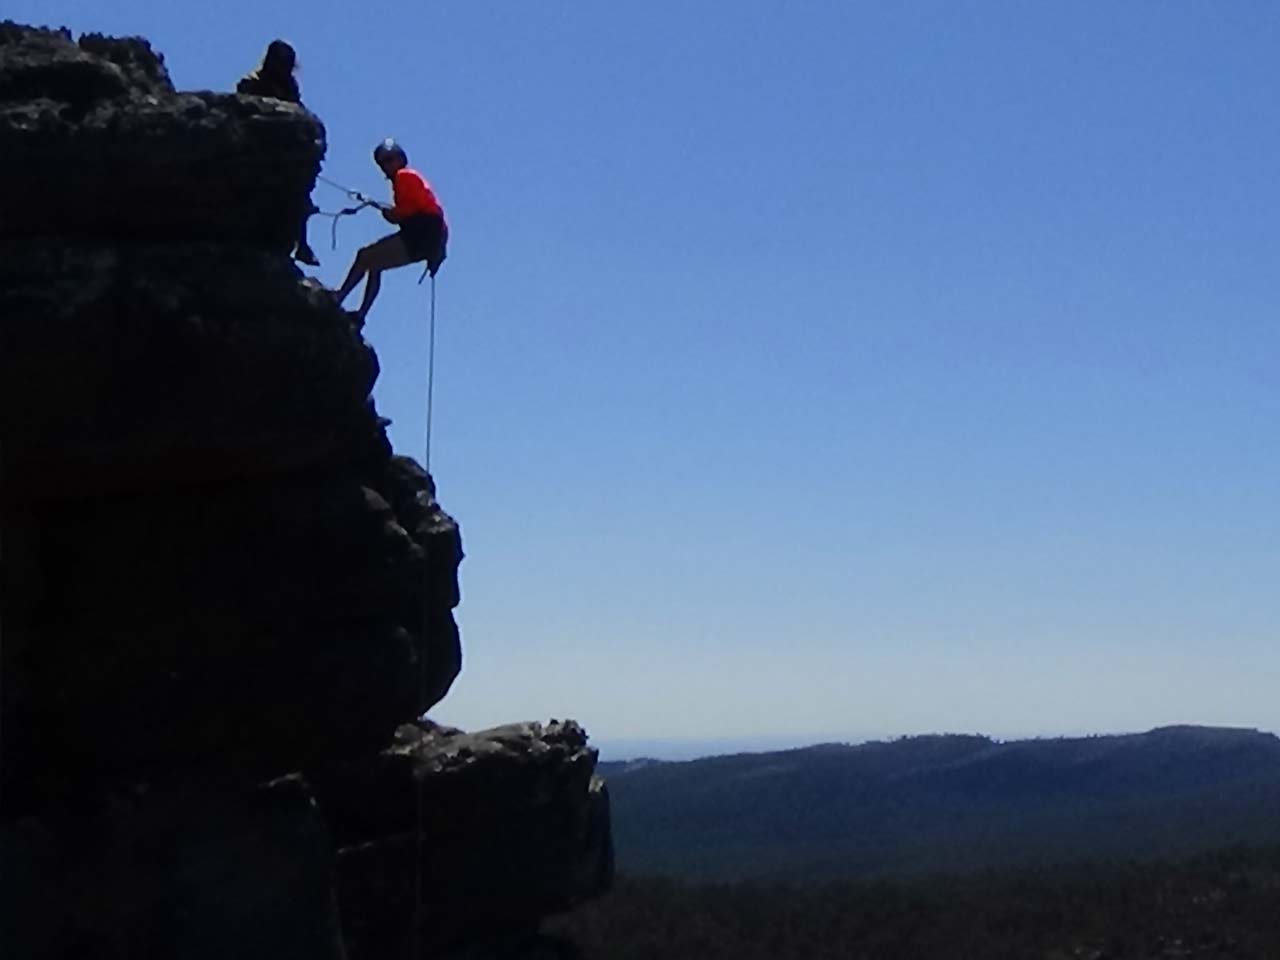 Outdoor rock climbing